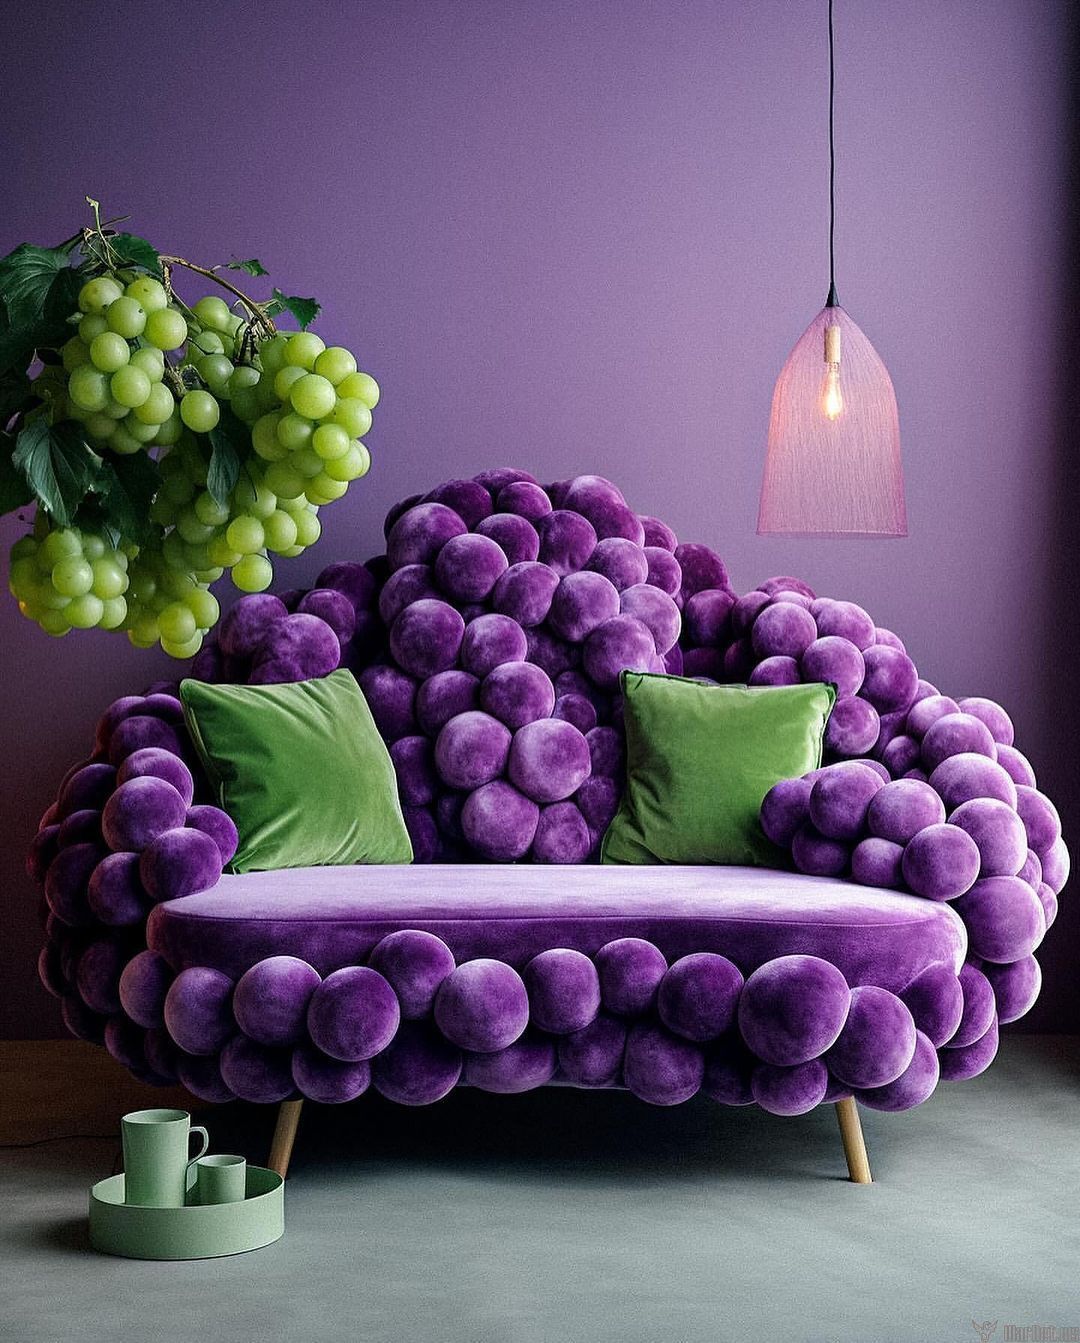 Необычные фруктовые кресла, выглядит круто. - Варнет